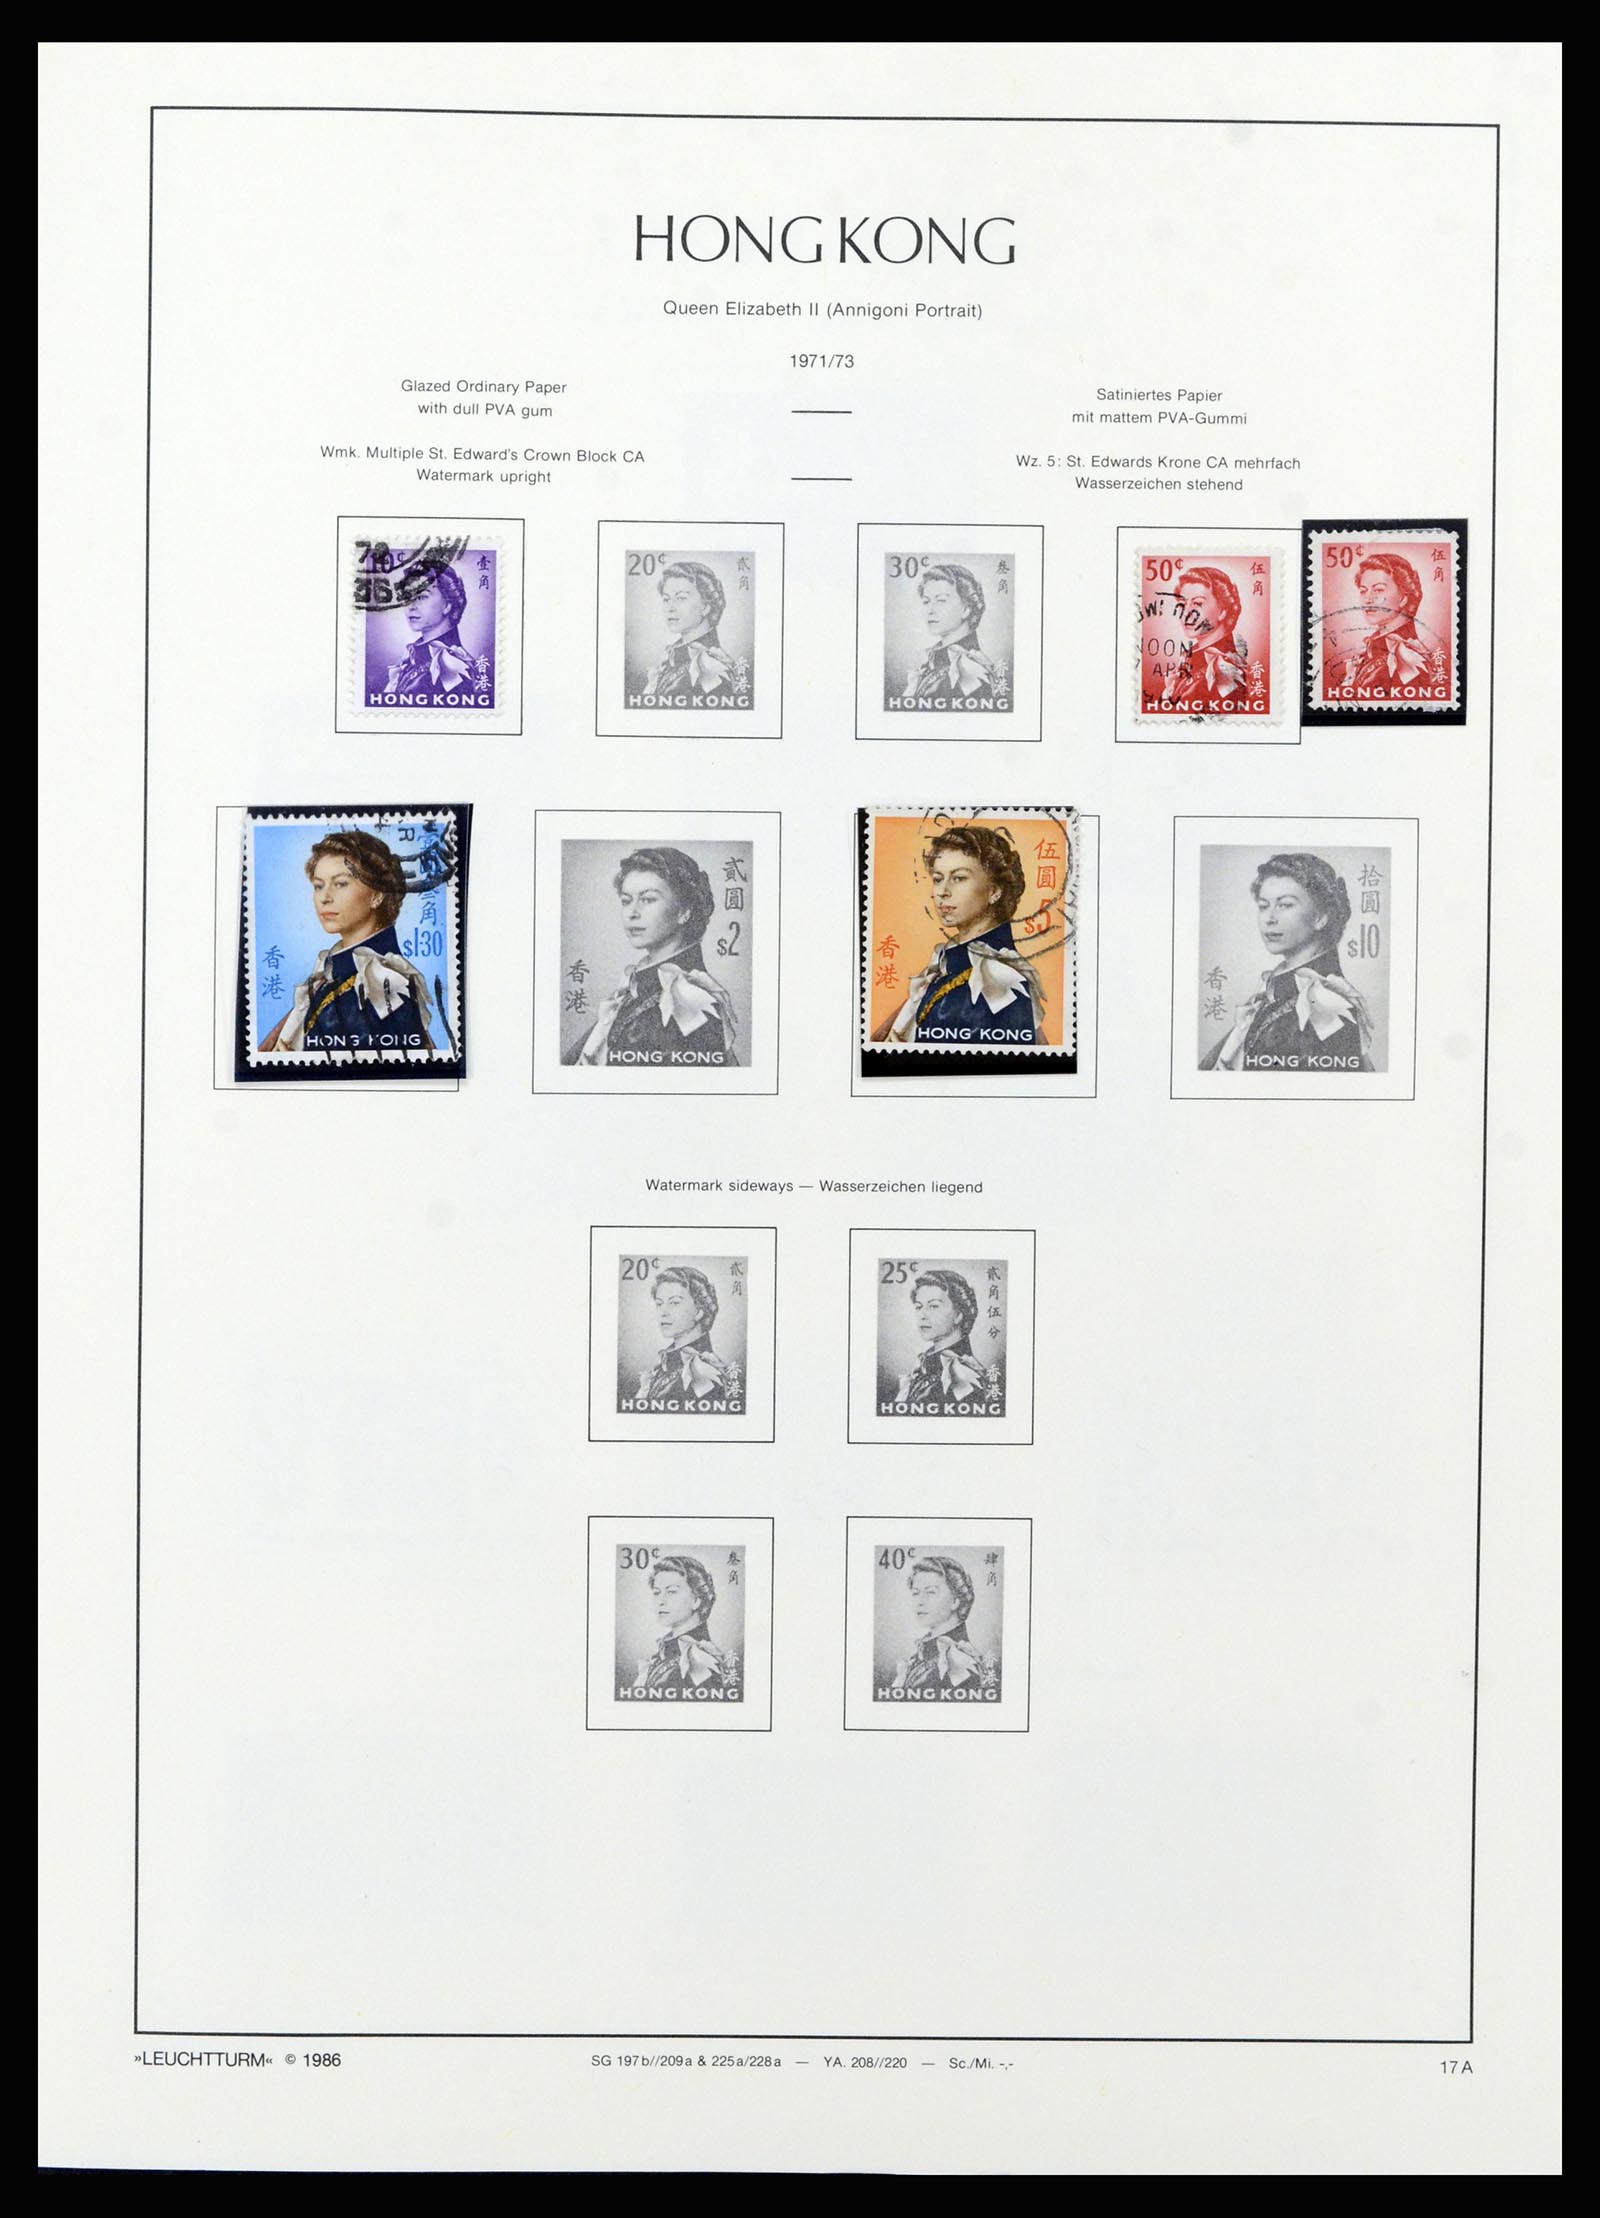 37070 022 - Stamp collection 37070 Hong Kong 1862-1996.